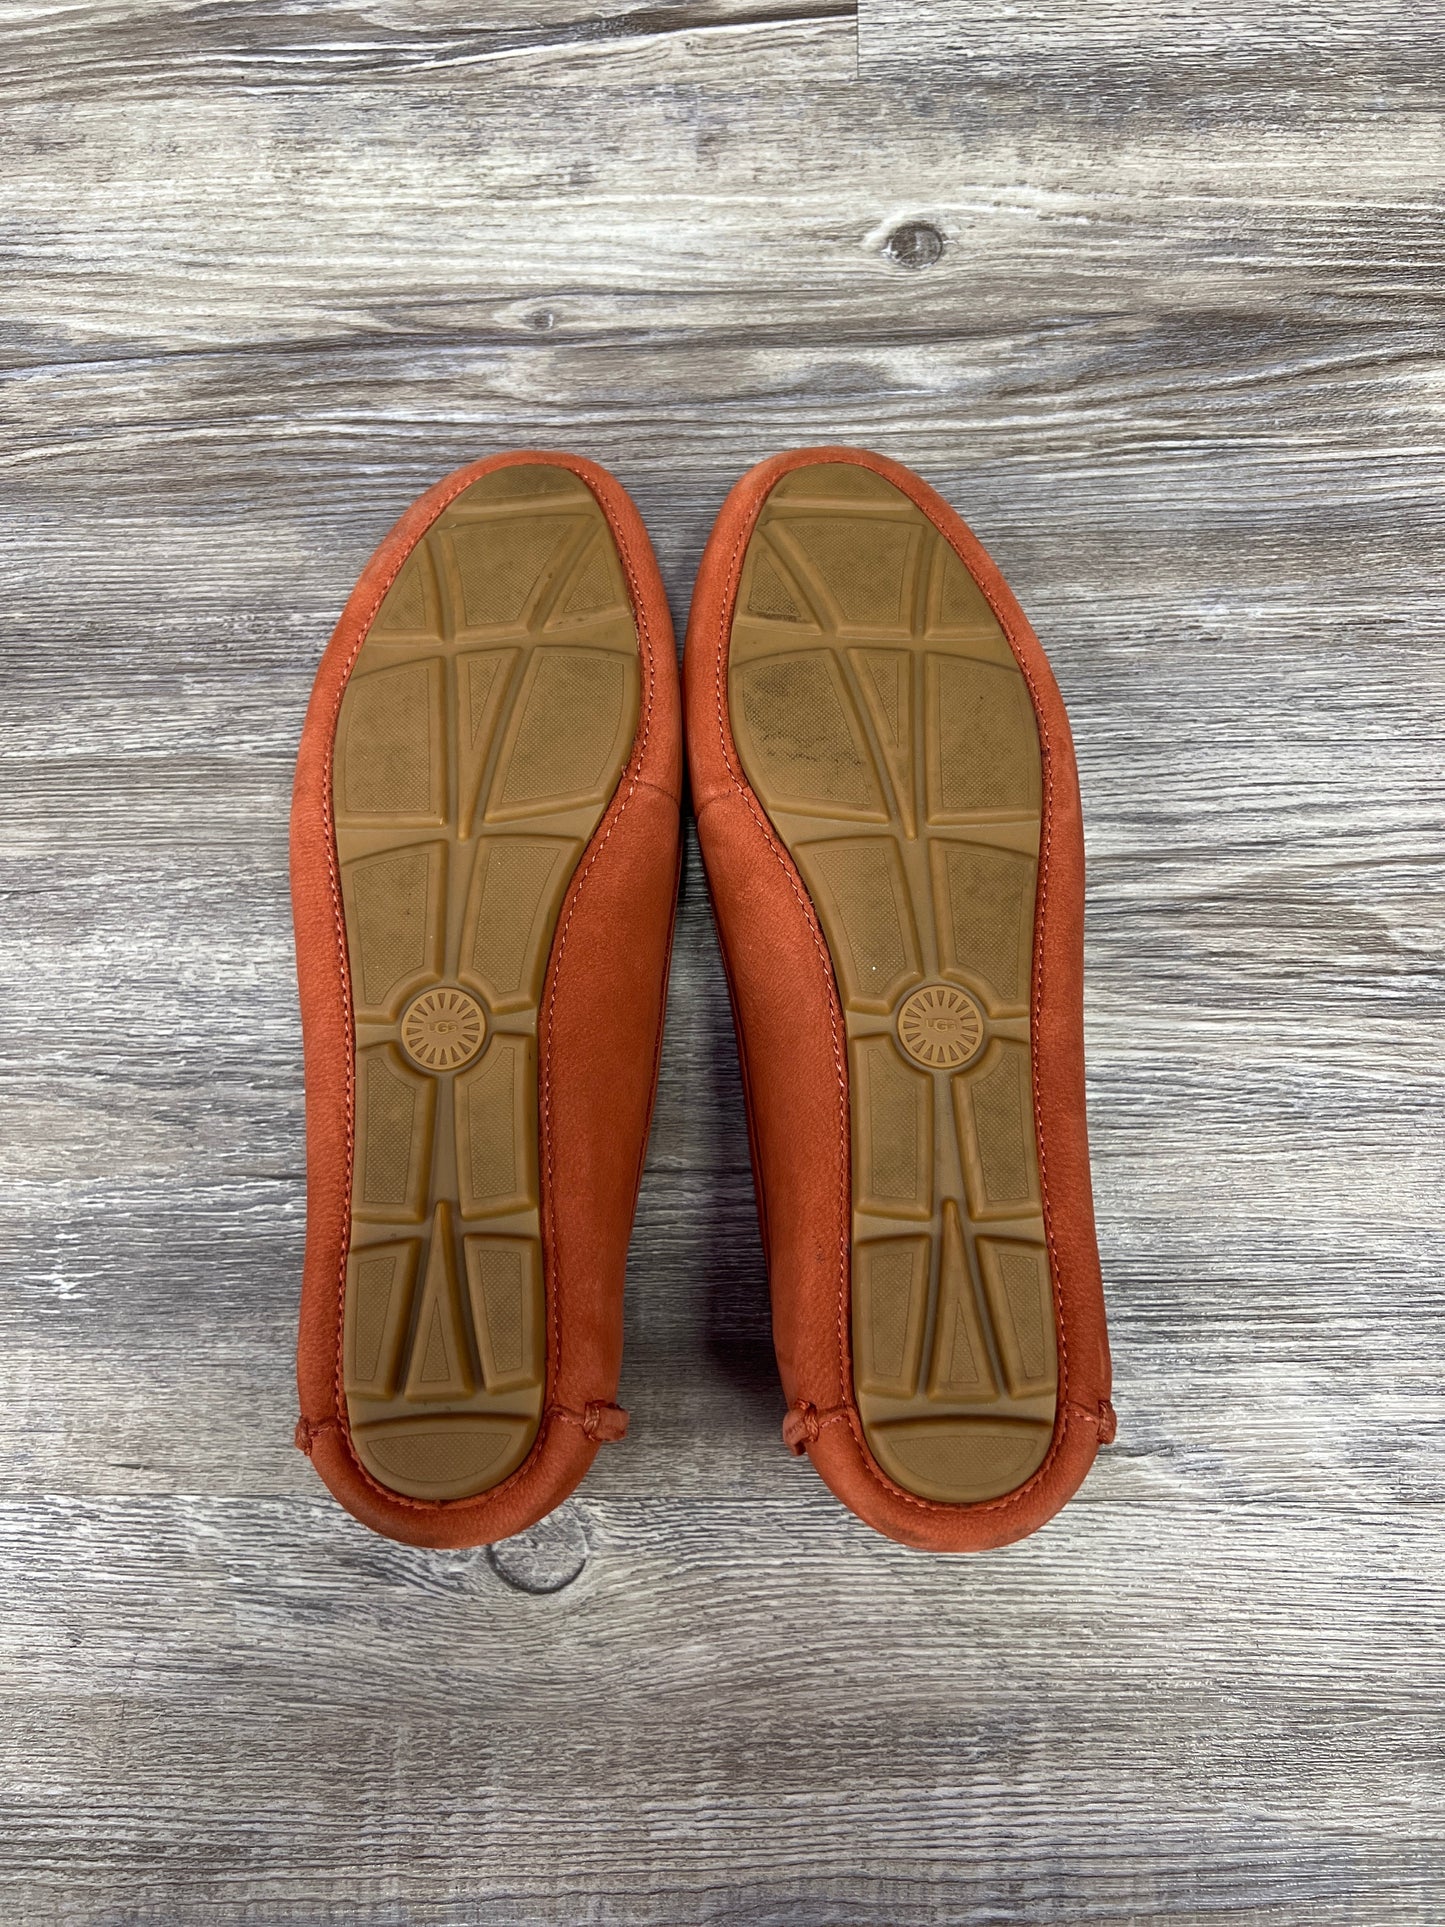 Orange Shoes Flats Ugg, Size 7